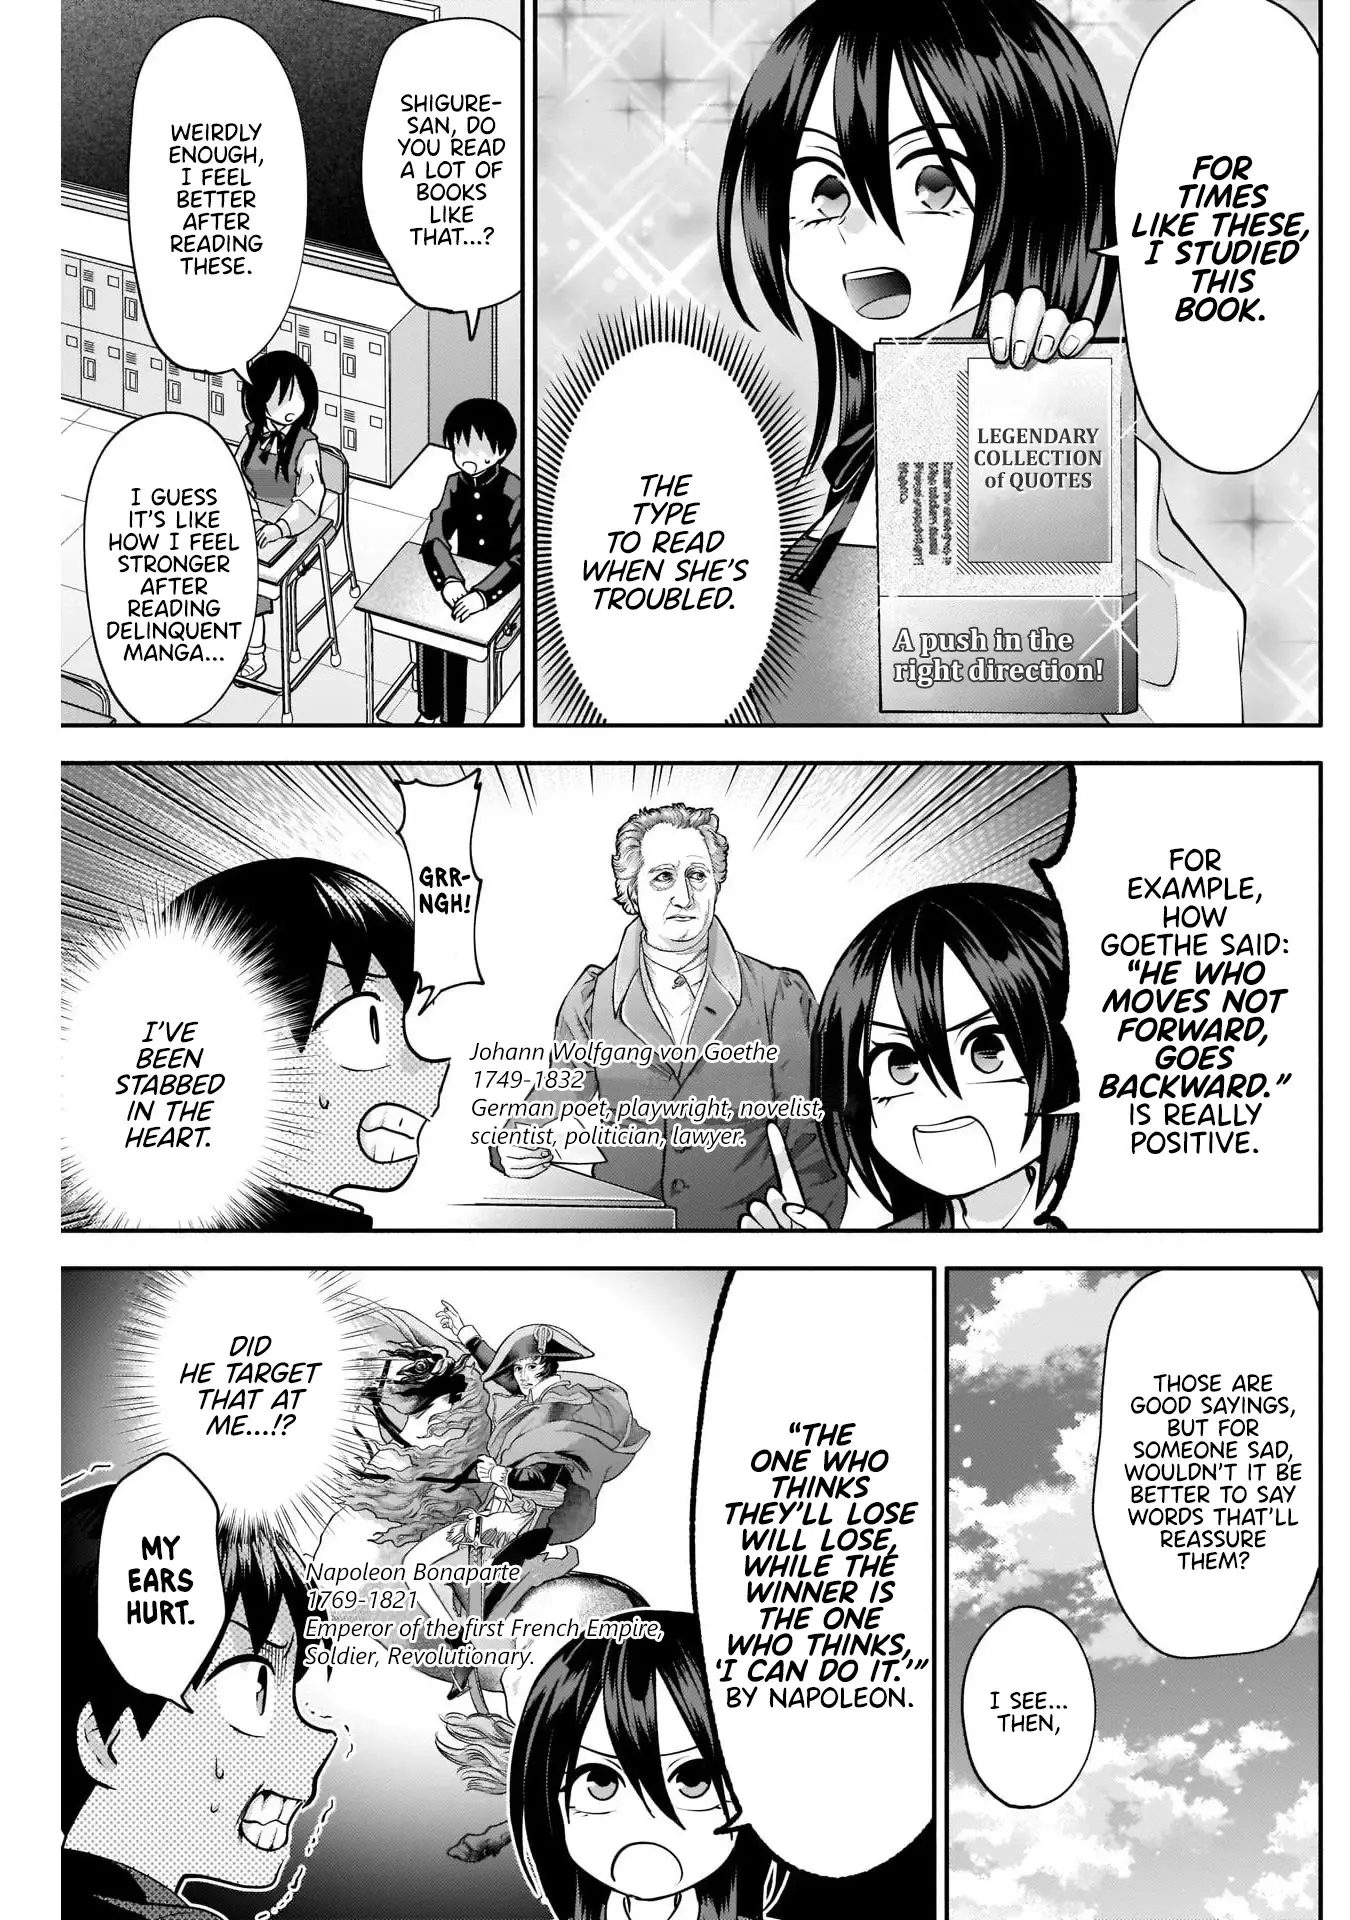 Shigure-San Wants To Shine! - 12 page 6-02fdc1ed